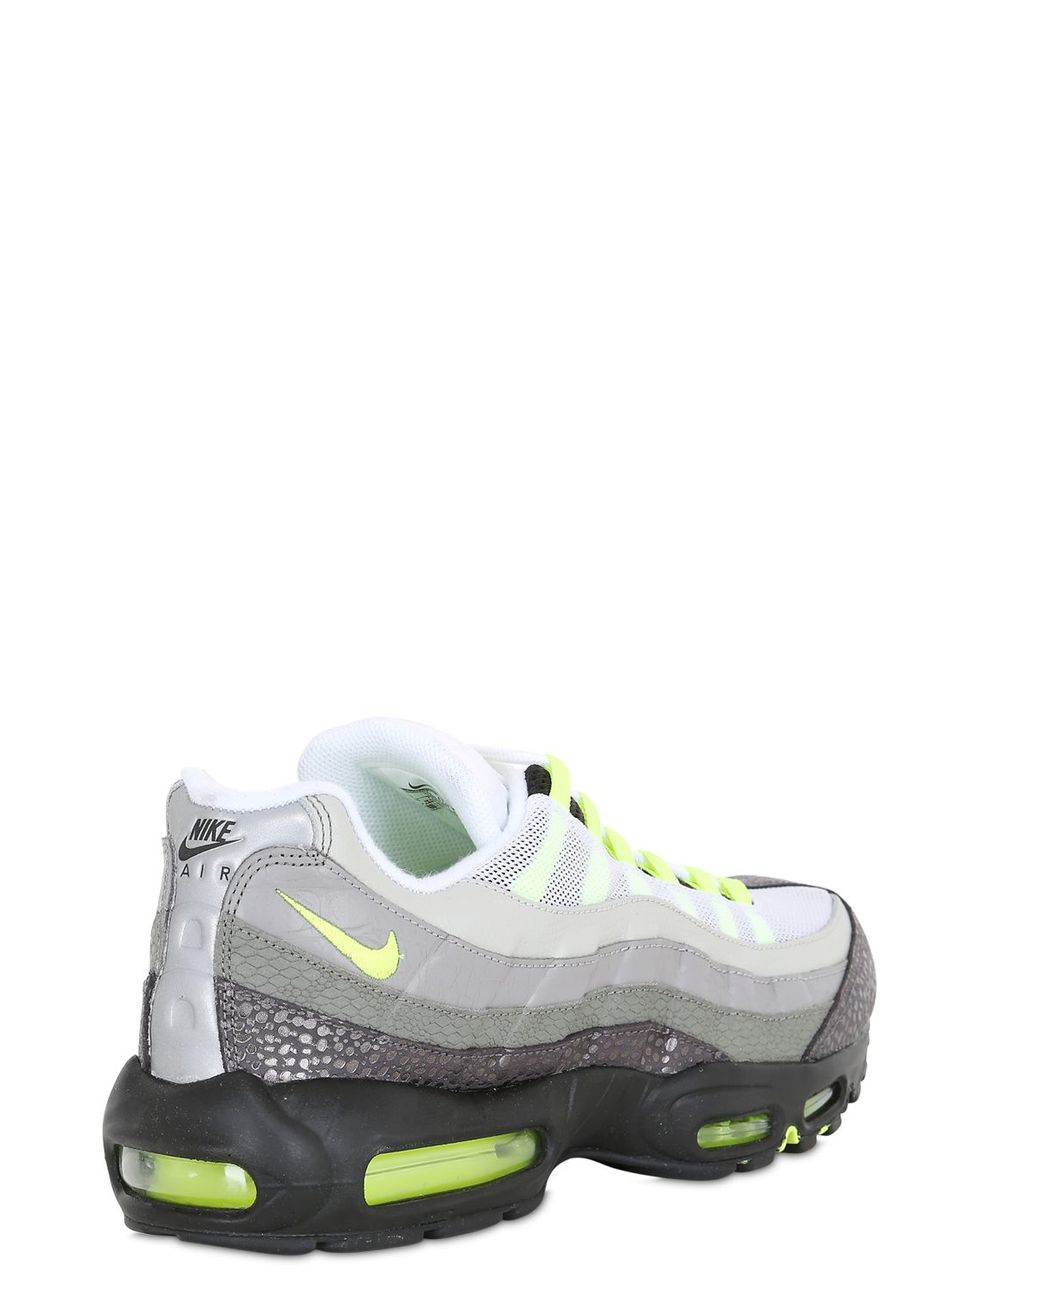 Nike Leather Air Max 95 Original Premium Sneakers in Grey/Green (Green) for  Men | Lyst UK